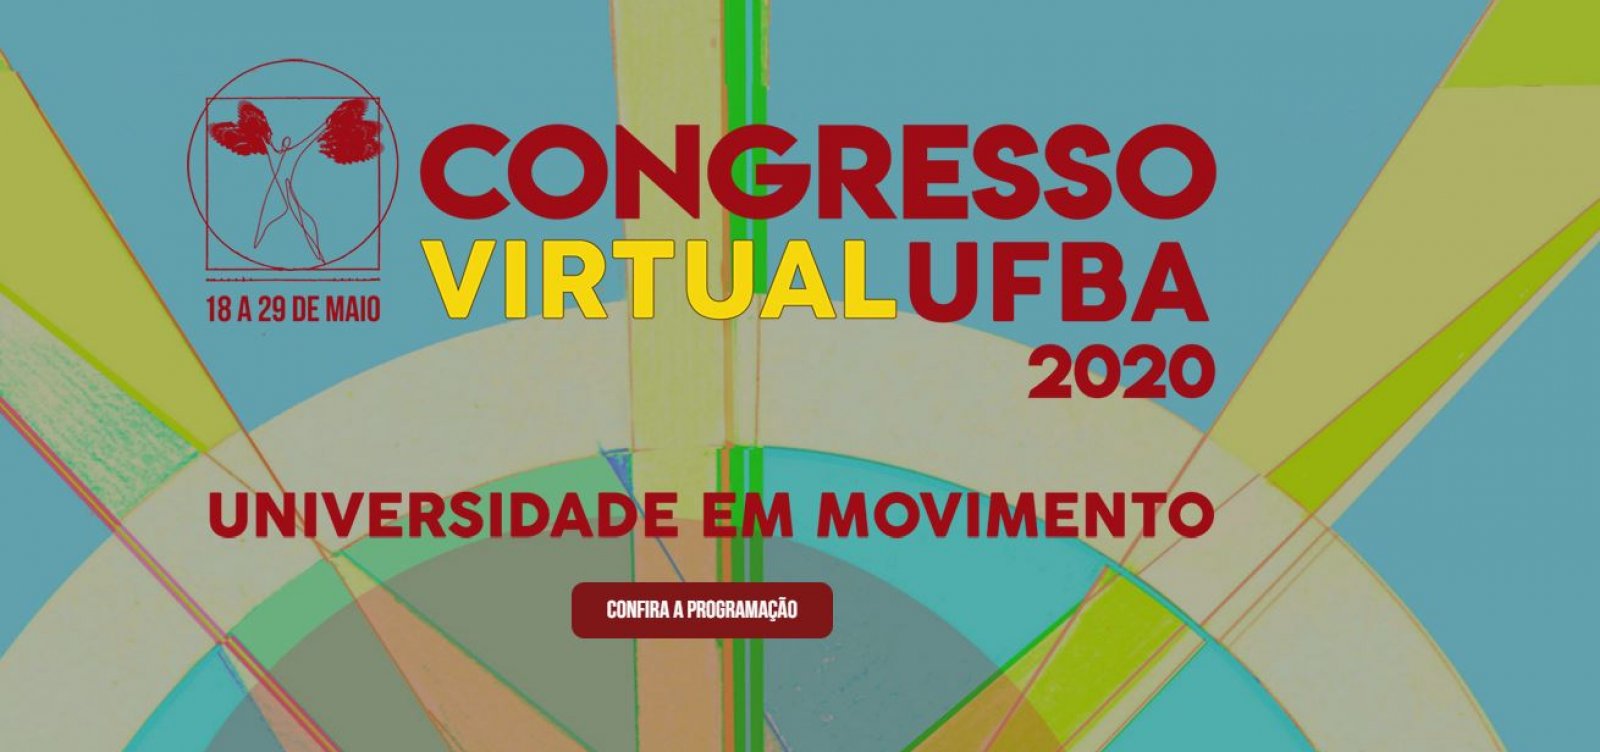 Congresso da Ufba tem hoje seu último dia; confira programação Metro 1